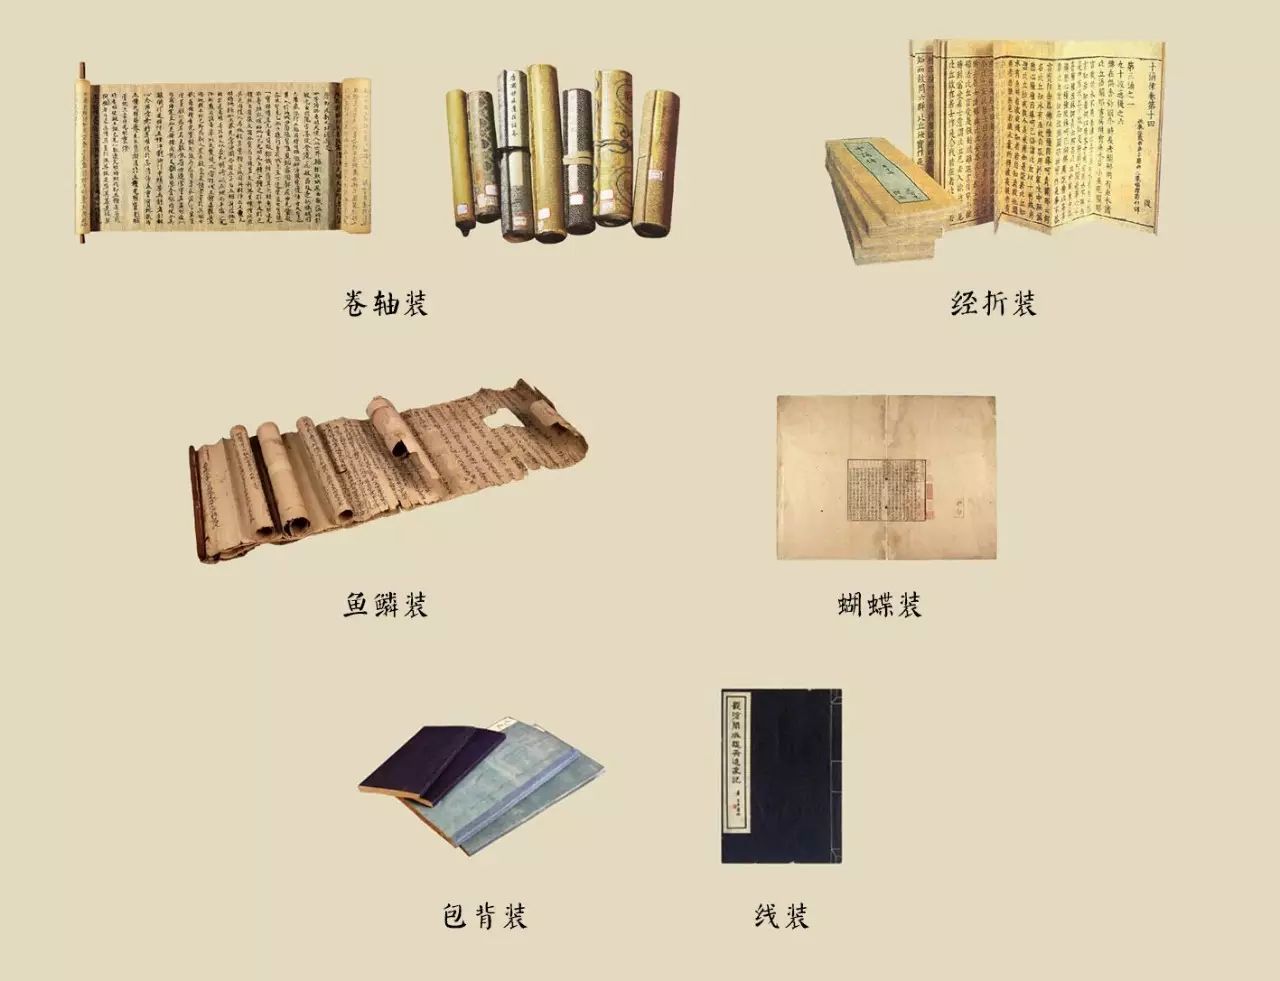 印刷古籍所用的纸张与装帧形式一样,随着时代的推移也产生了许多的